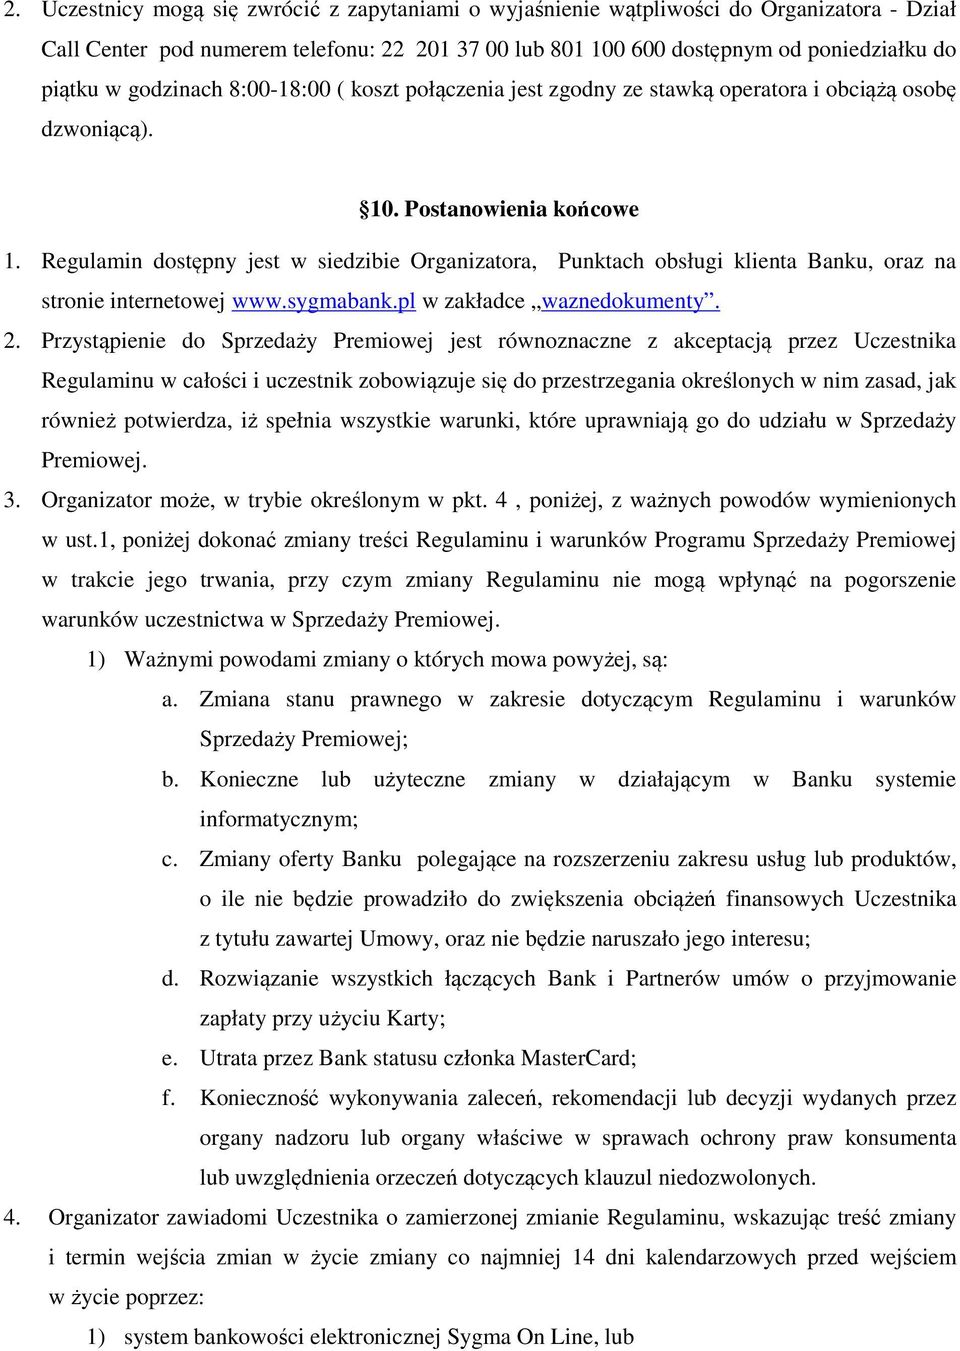 Regulamin dostępny jest w siedzibie Organizatora, Punktach obsługi klienta Banku, oraz na stronie internetowej www.sygmabank.pl w zakładce waznedokumenty. 2.